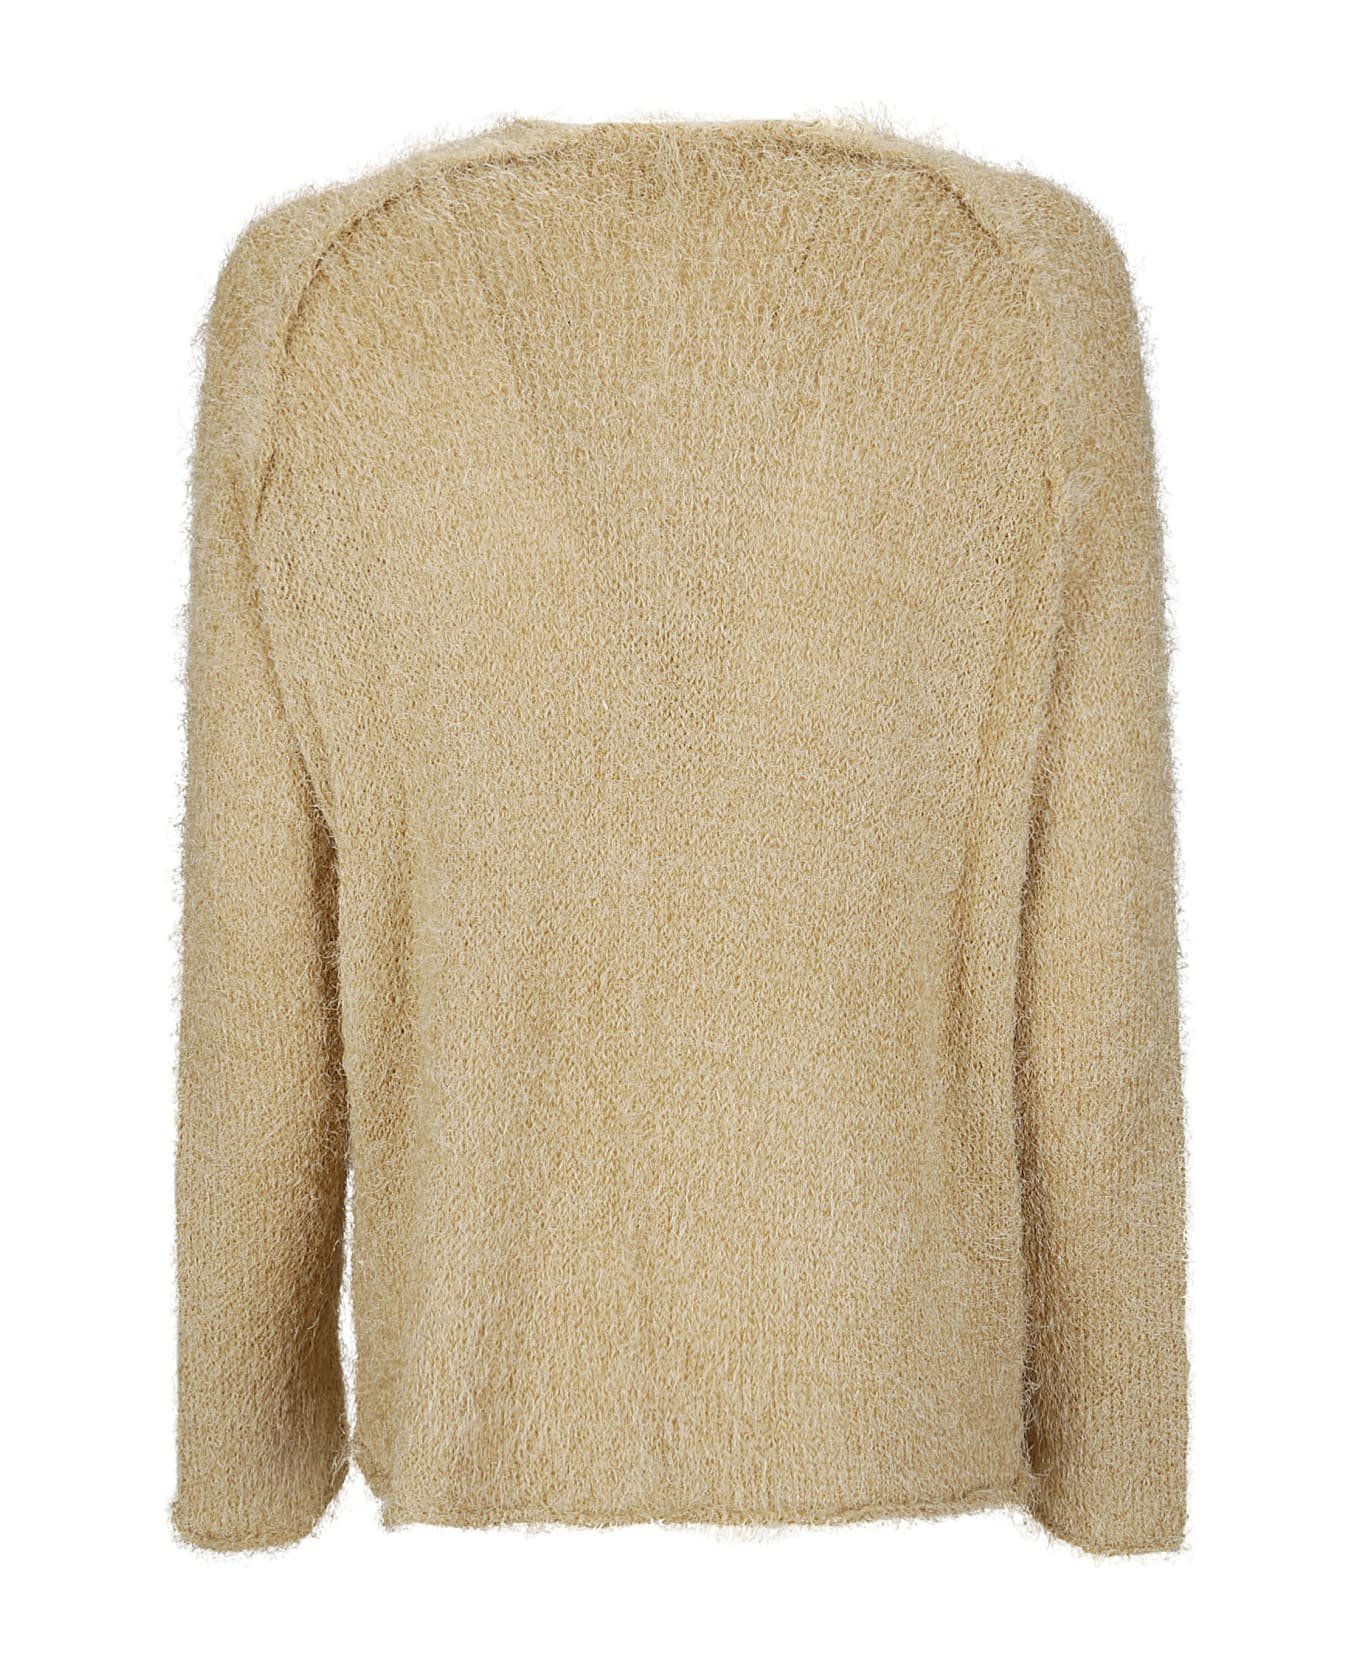 Boboutic Sweater - SAND ニットウェア